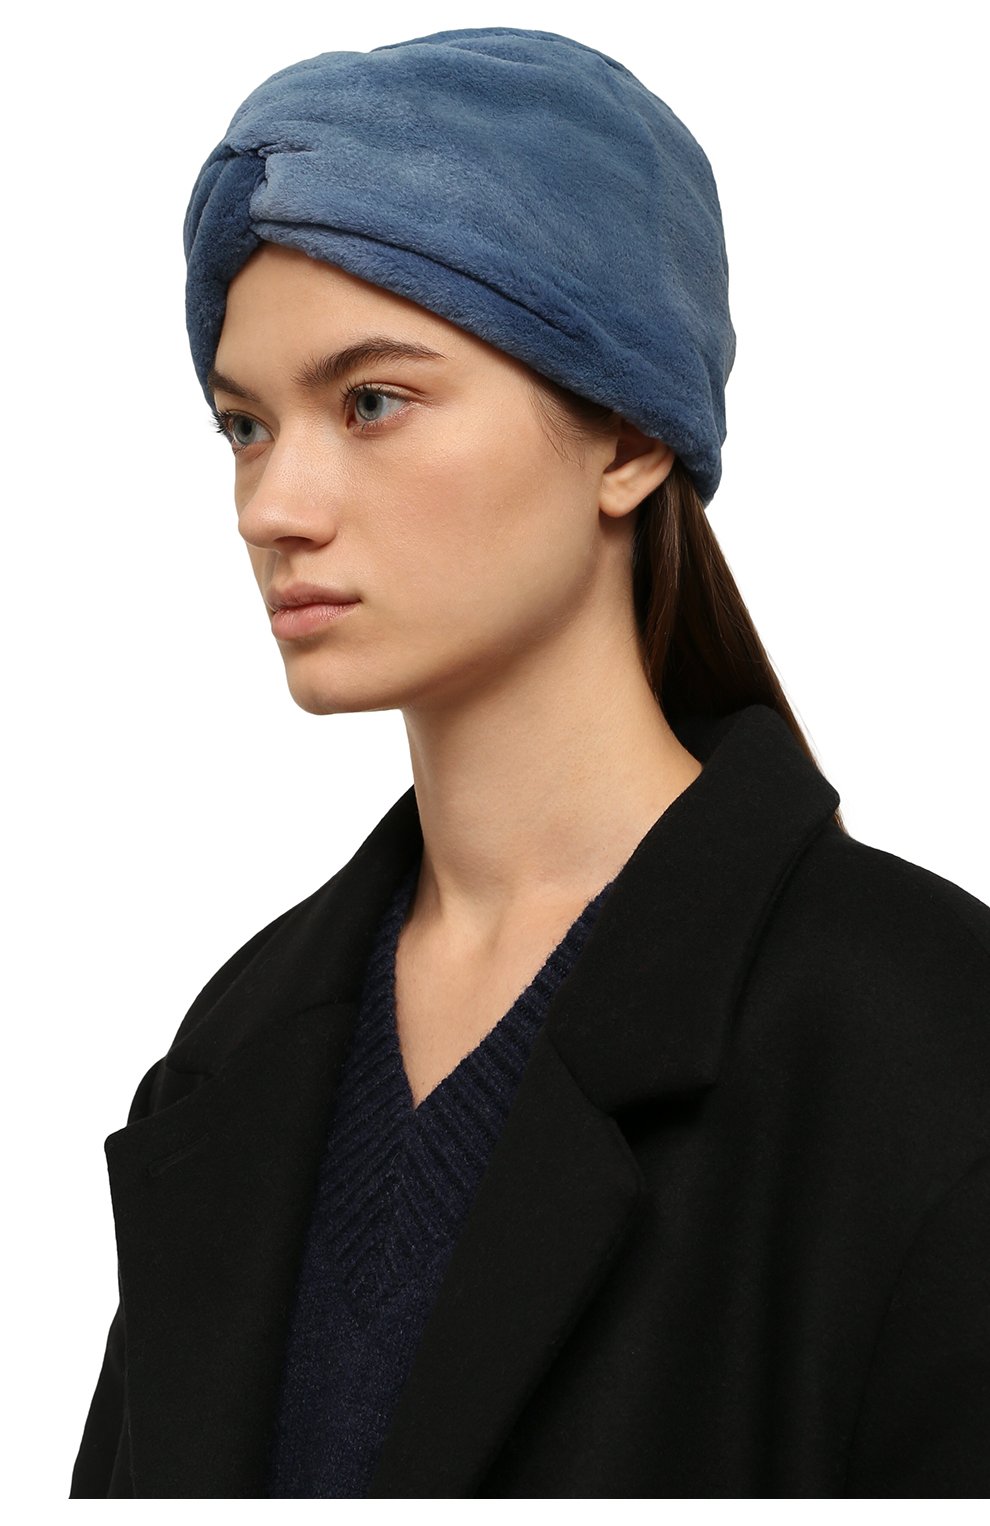 Чалма-повязка или головной убор для тех, кто не любит носить шапки